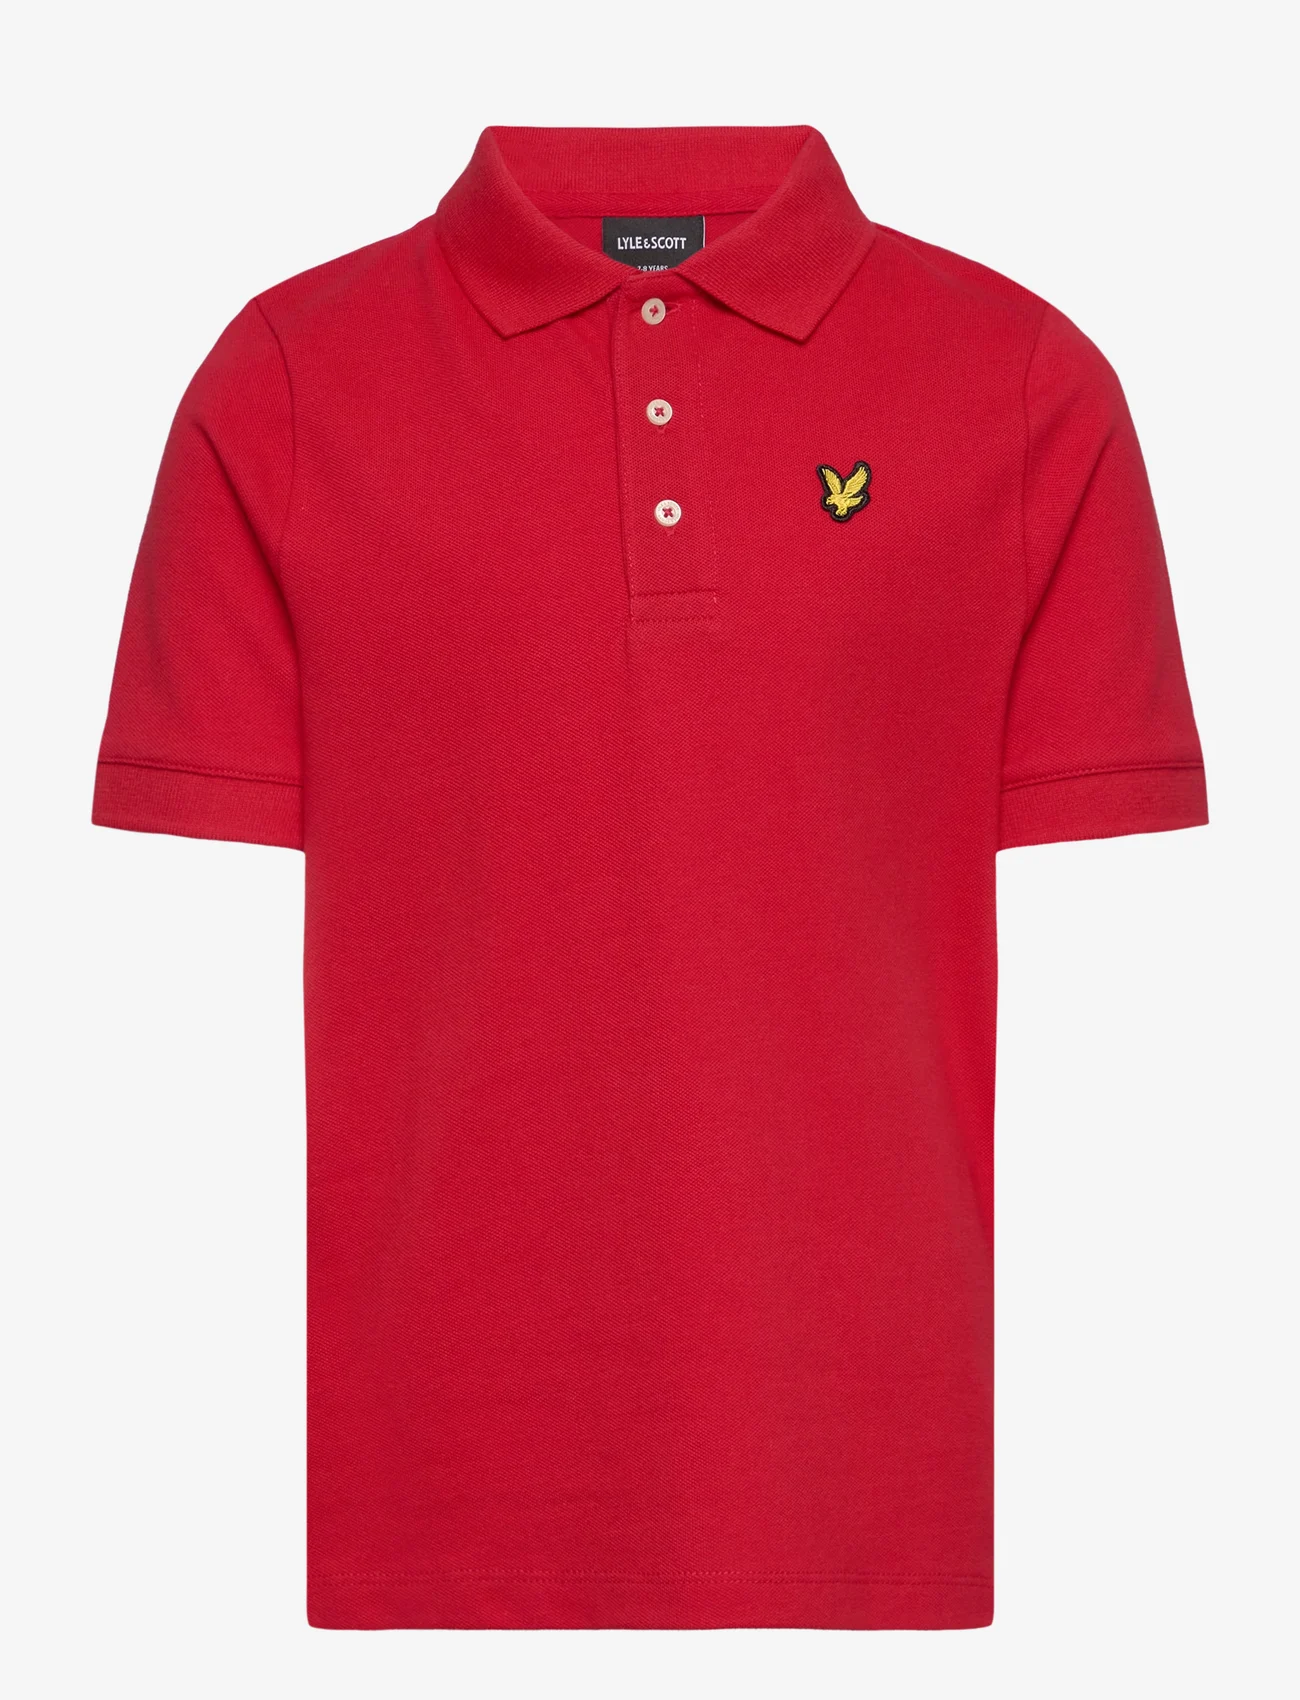 Lyle & Scott - Plain Polo Shirt - korte mouwen - z799 gala red - 0